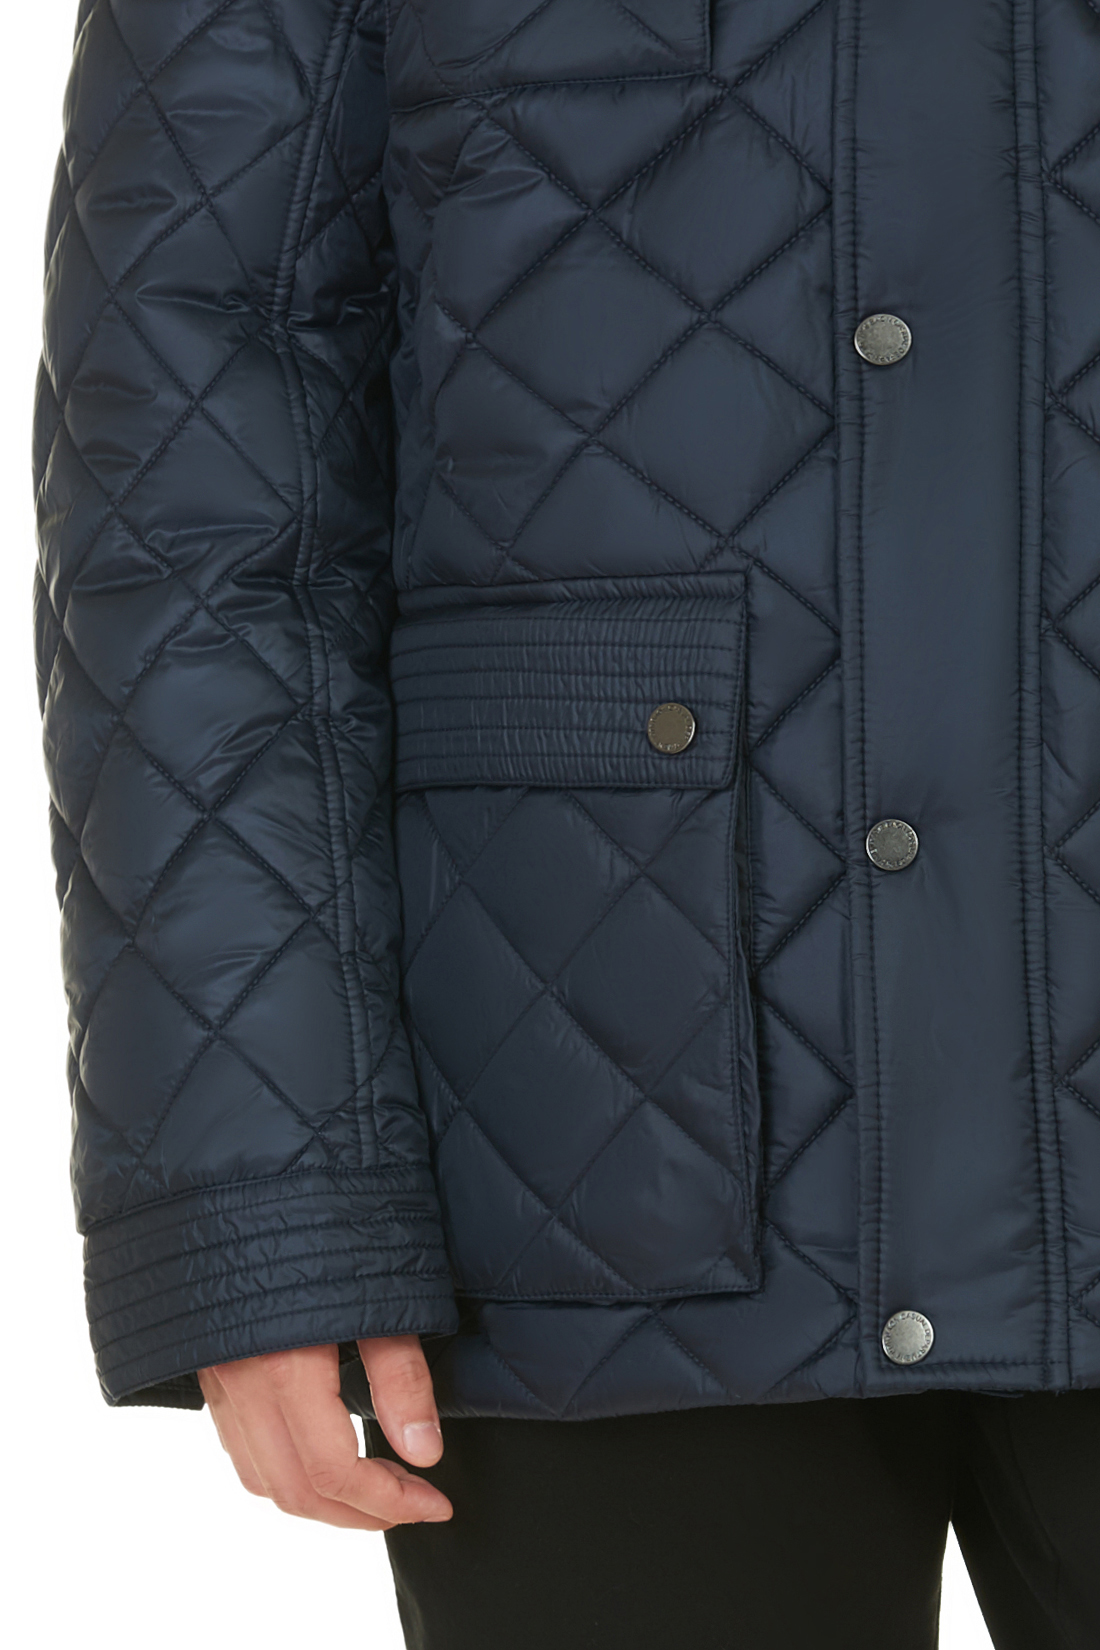 Стёганая куртка с металлической фурнитурой (арт. baon B537550), размер XXL, цвет синий Стёганая куртка с металлической фурнитурой (арт. baon B537550) - фото 4